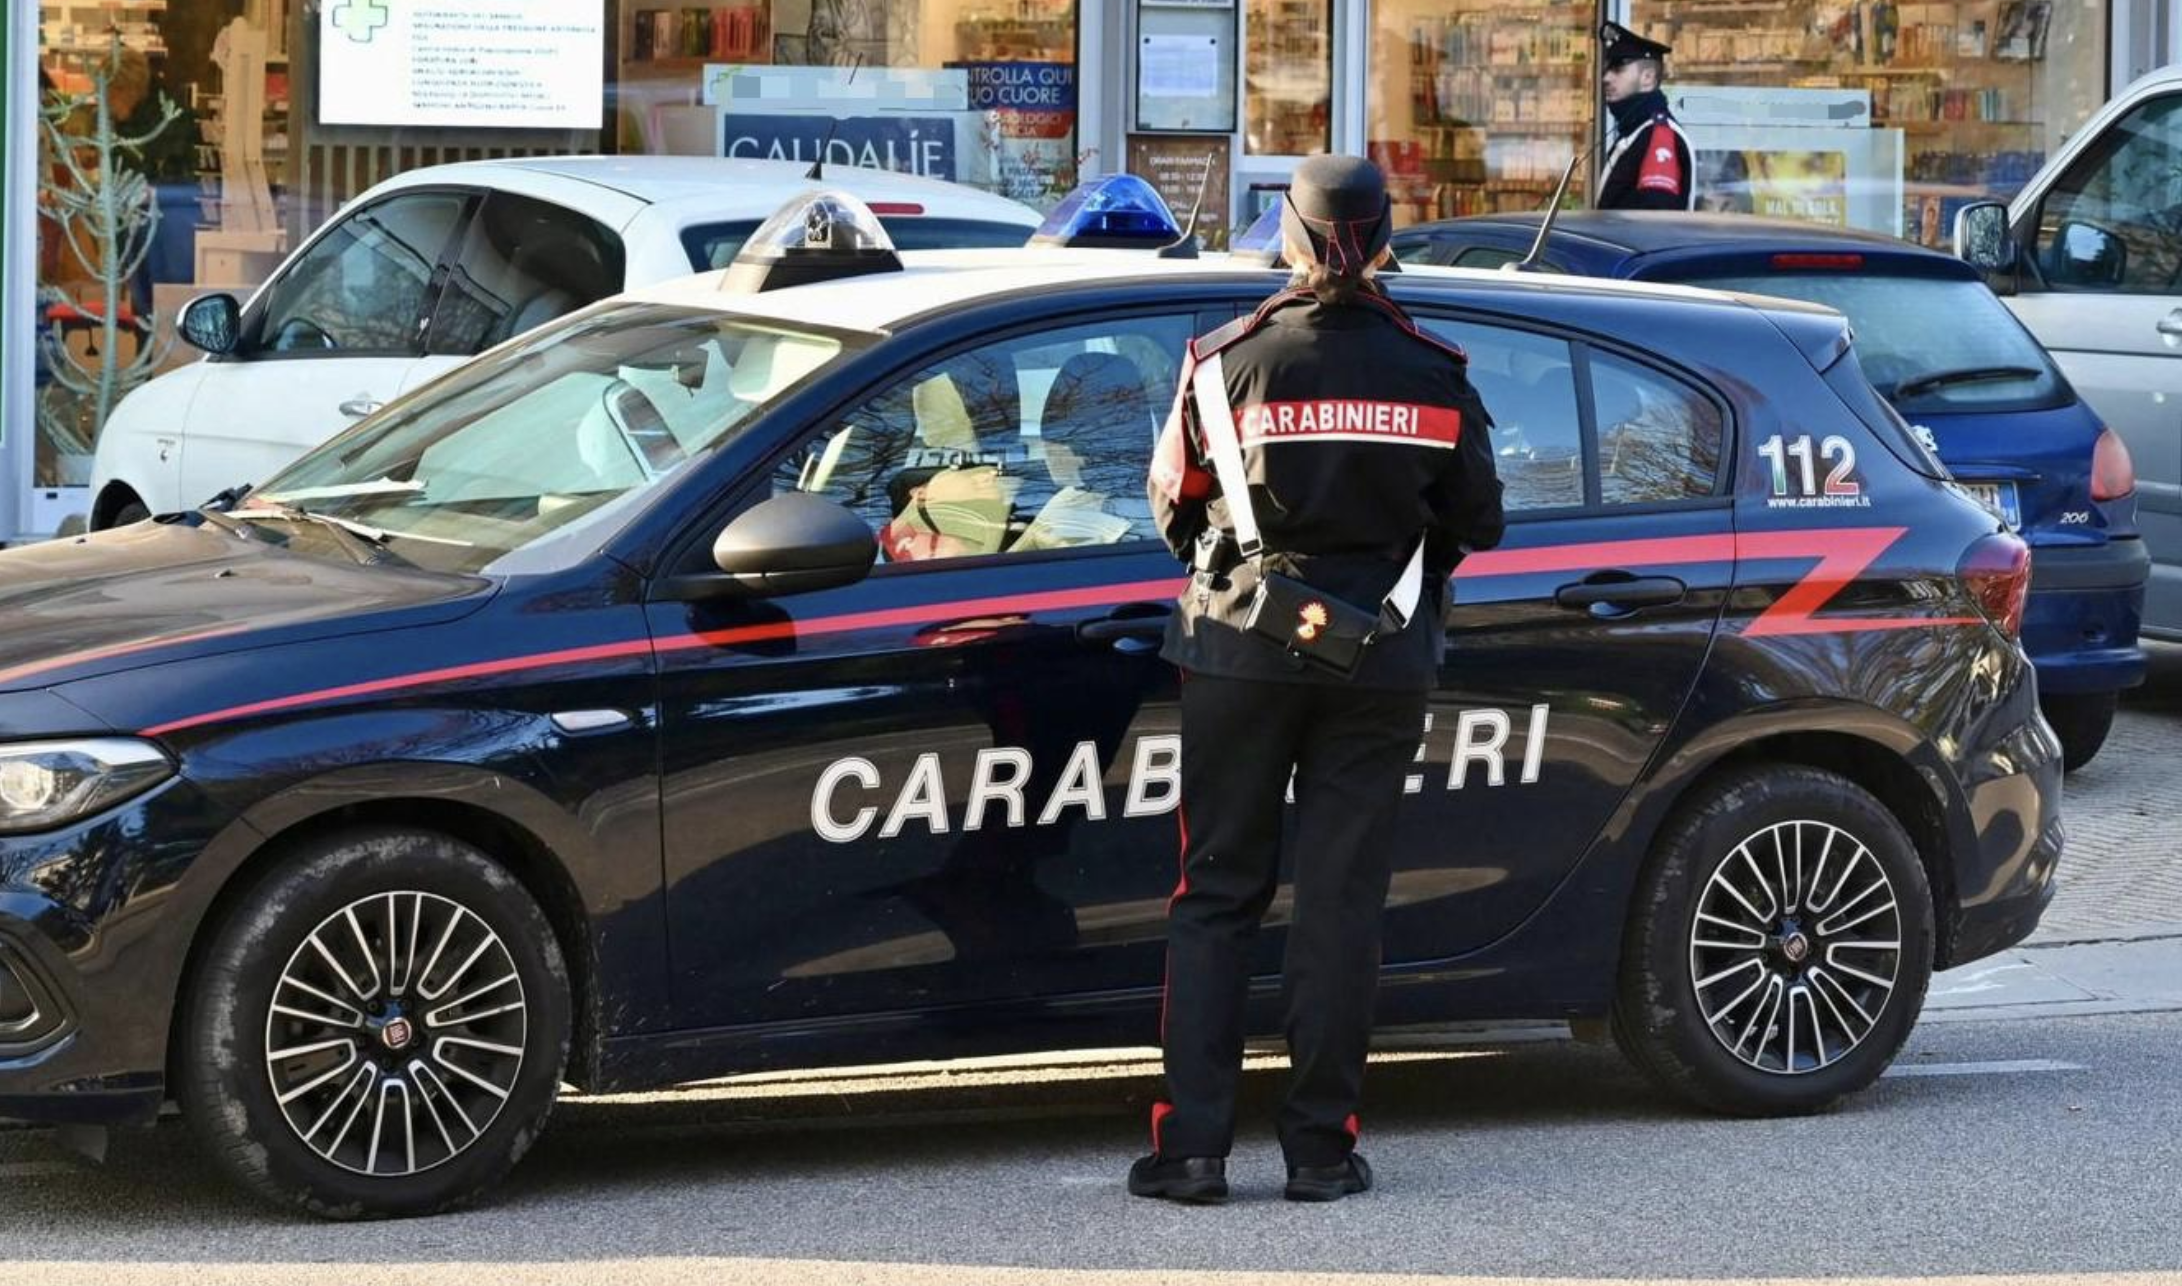 "Tuo figlio ha investito una donna incinta": come funziona la truffa sgominata dai Carabinieri